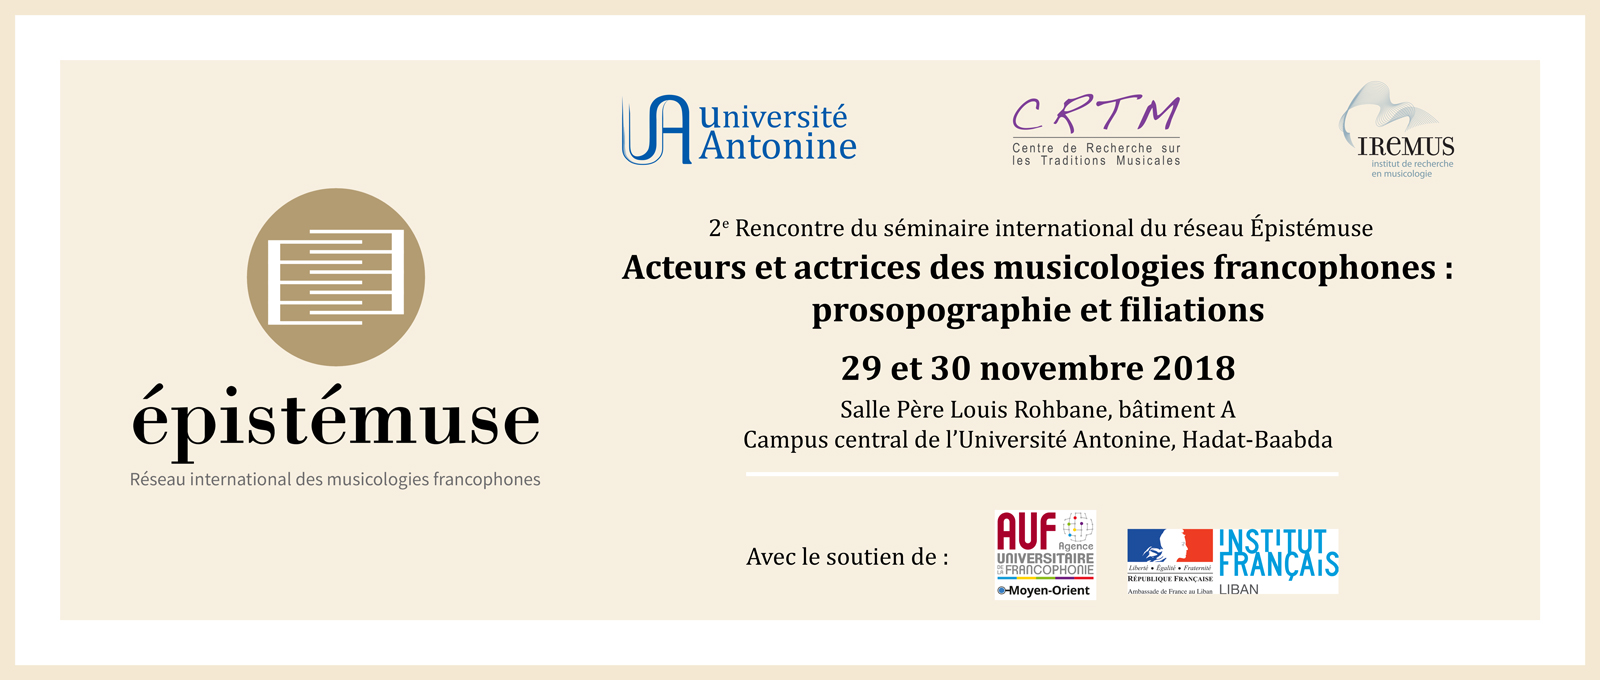 2e Rencontre du séminaire international du réseau Épistémuse « Acteurs et actrices des musicologies francophones : prosopographie et filiations » 